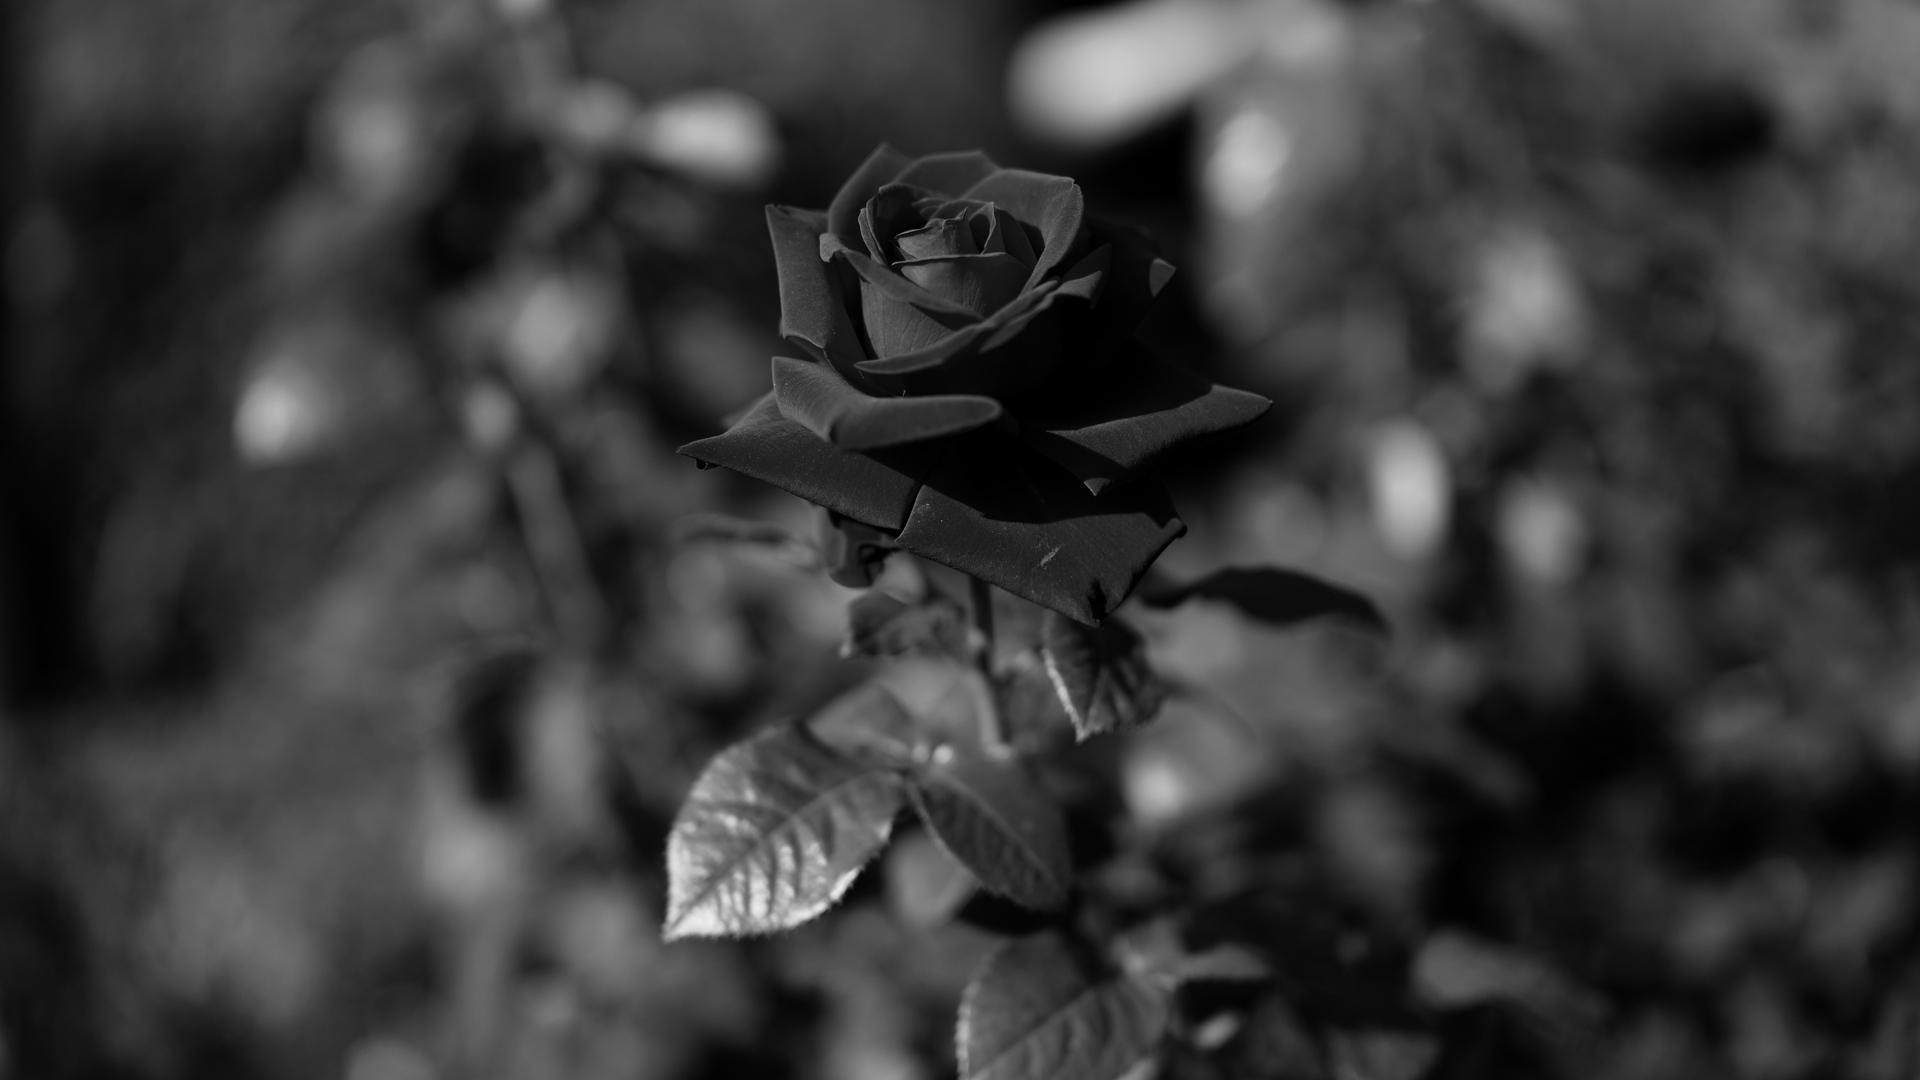 Những hình ảnh hoa hồng đen đẹp nhất